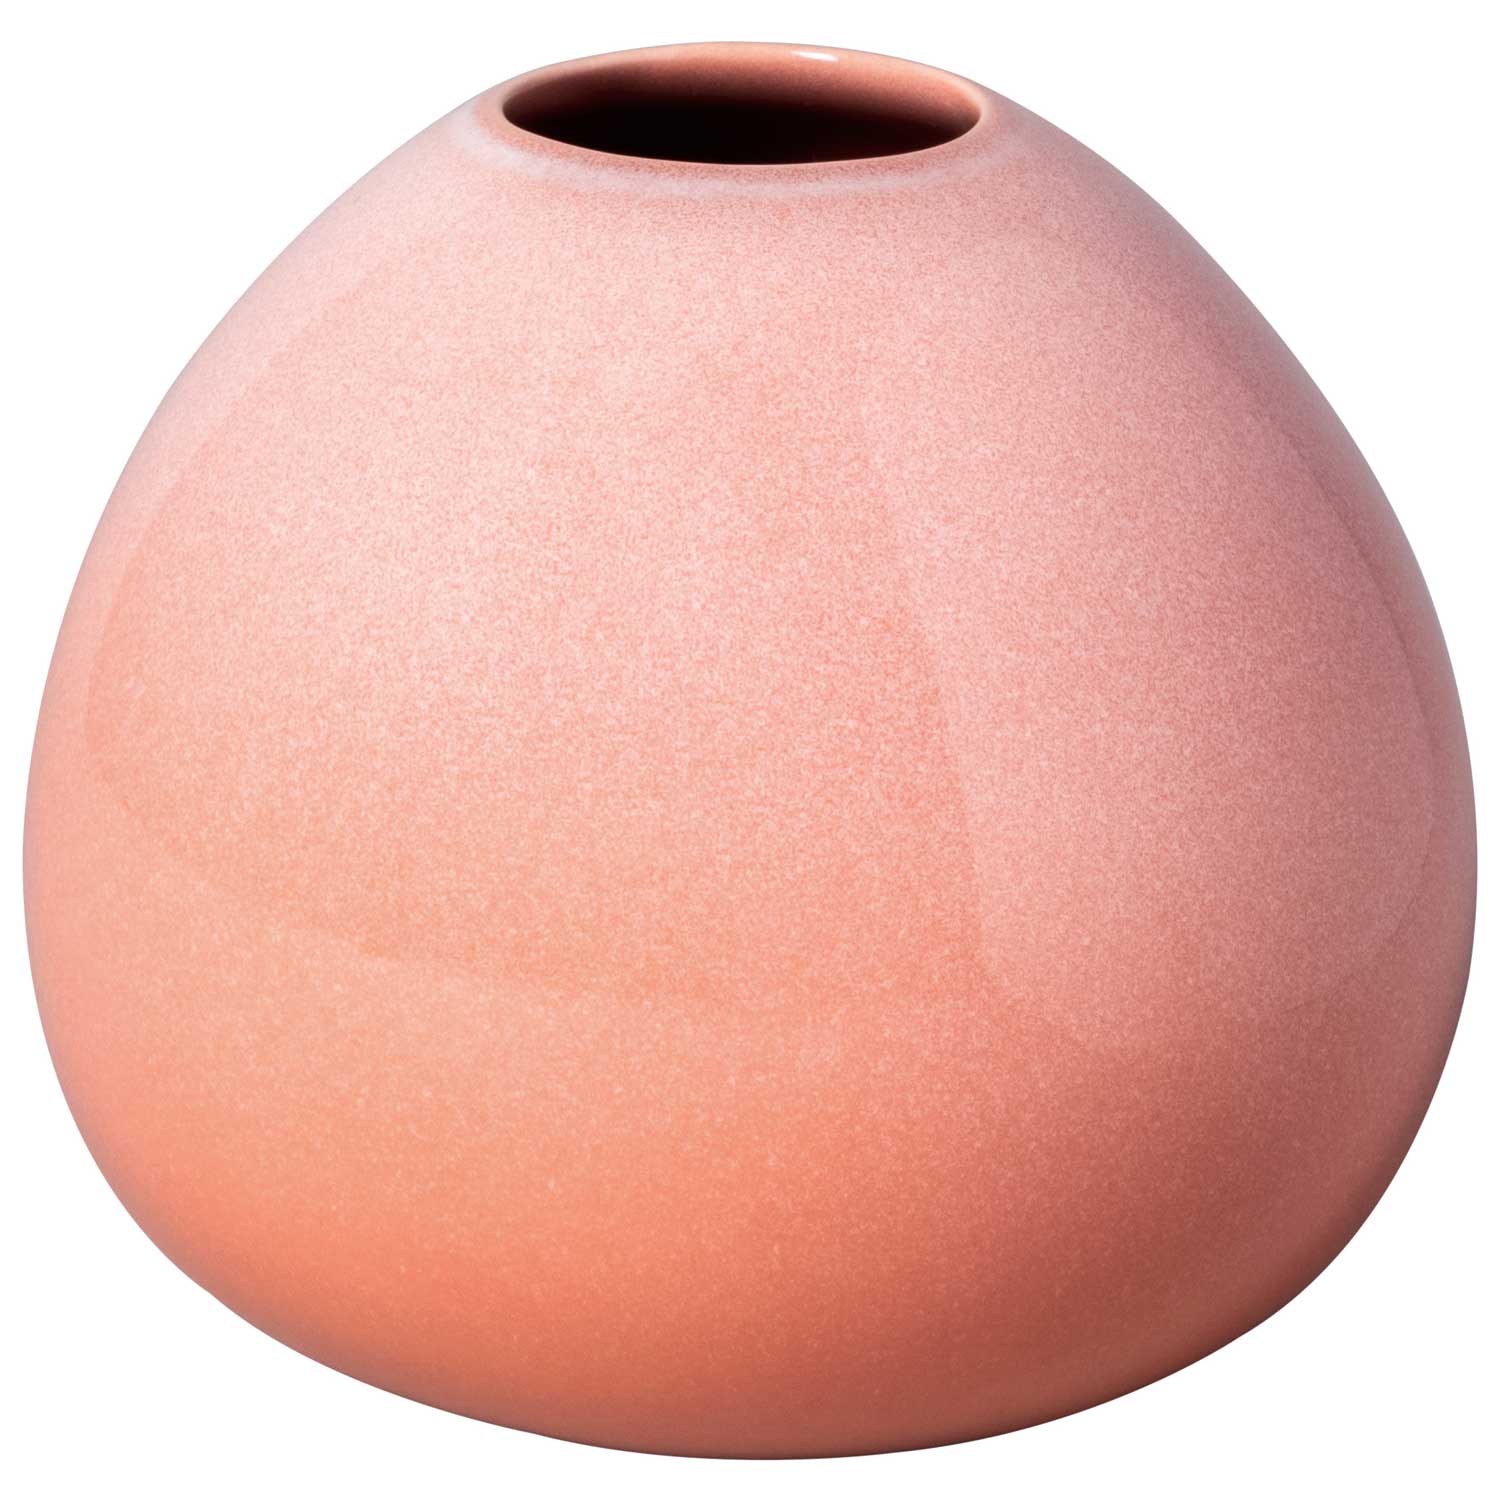 Villeroy & Boch Perlemor Home Drop Vase, 13 cm Rose (Pink) Steingods